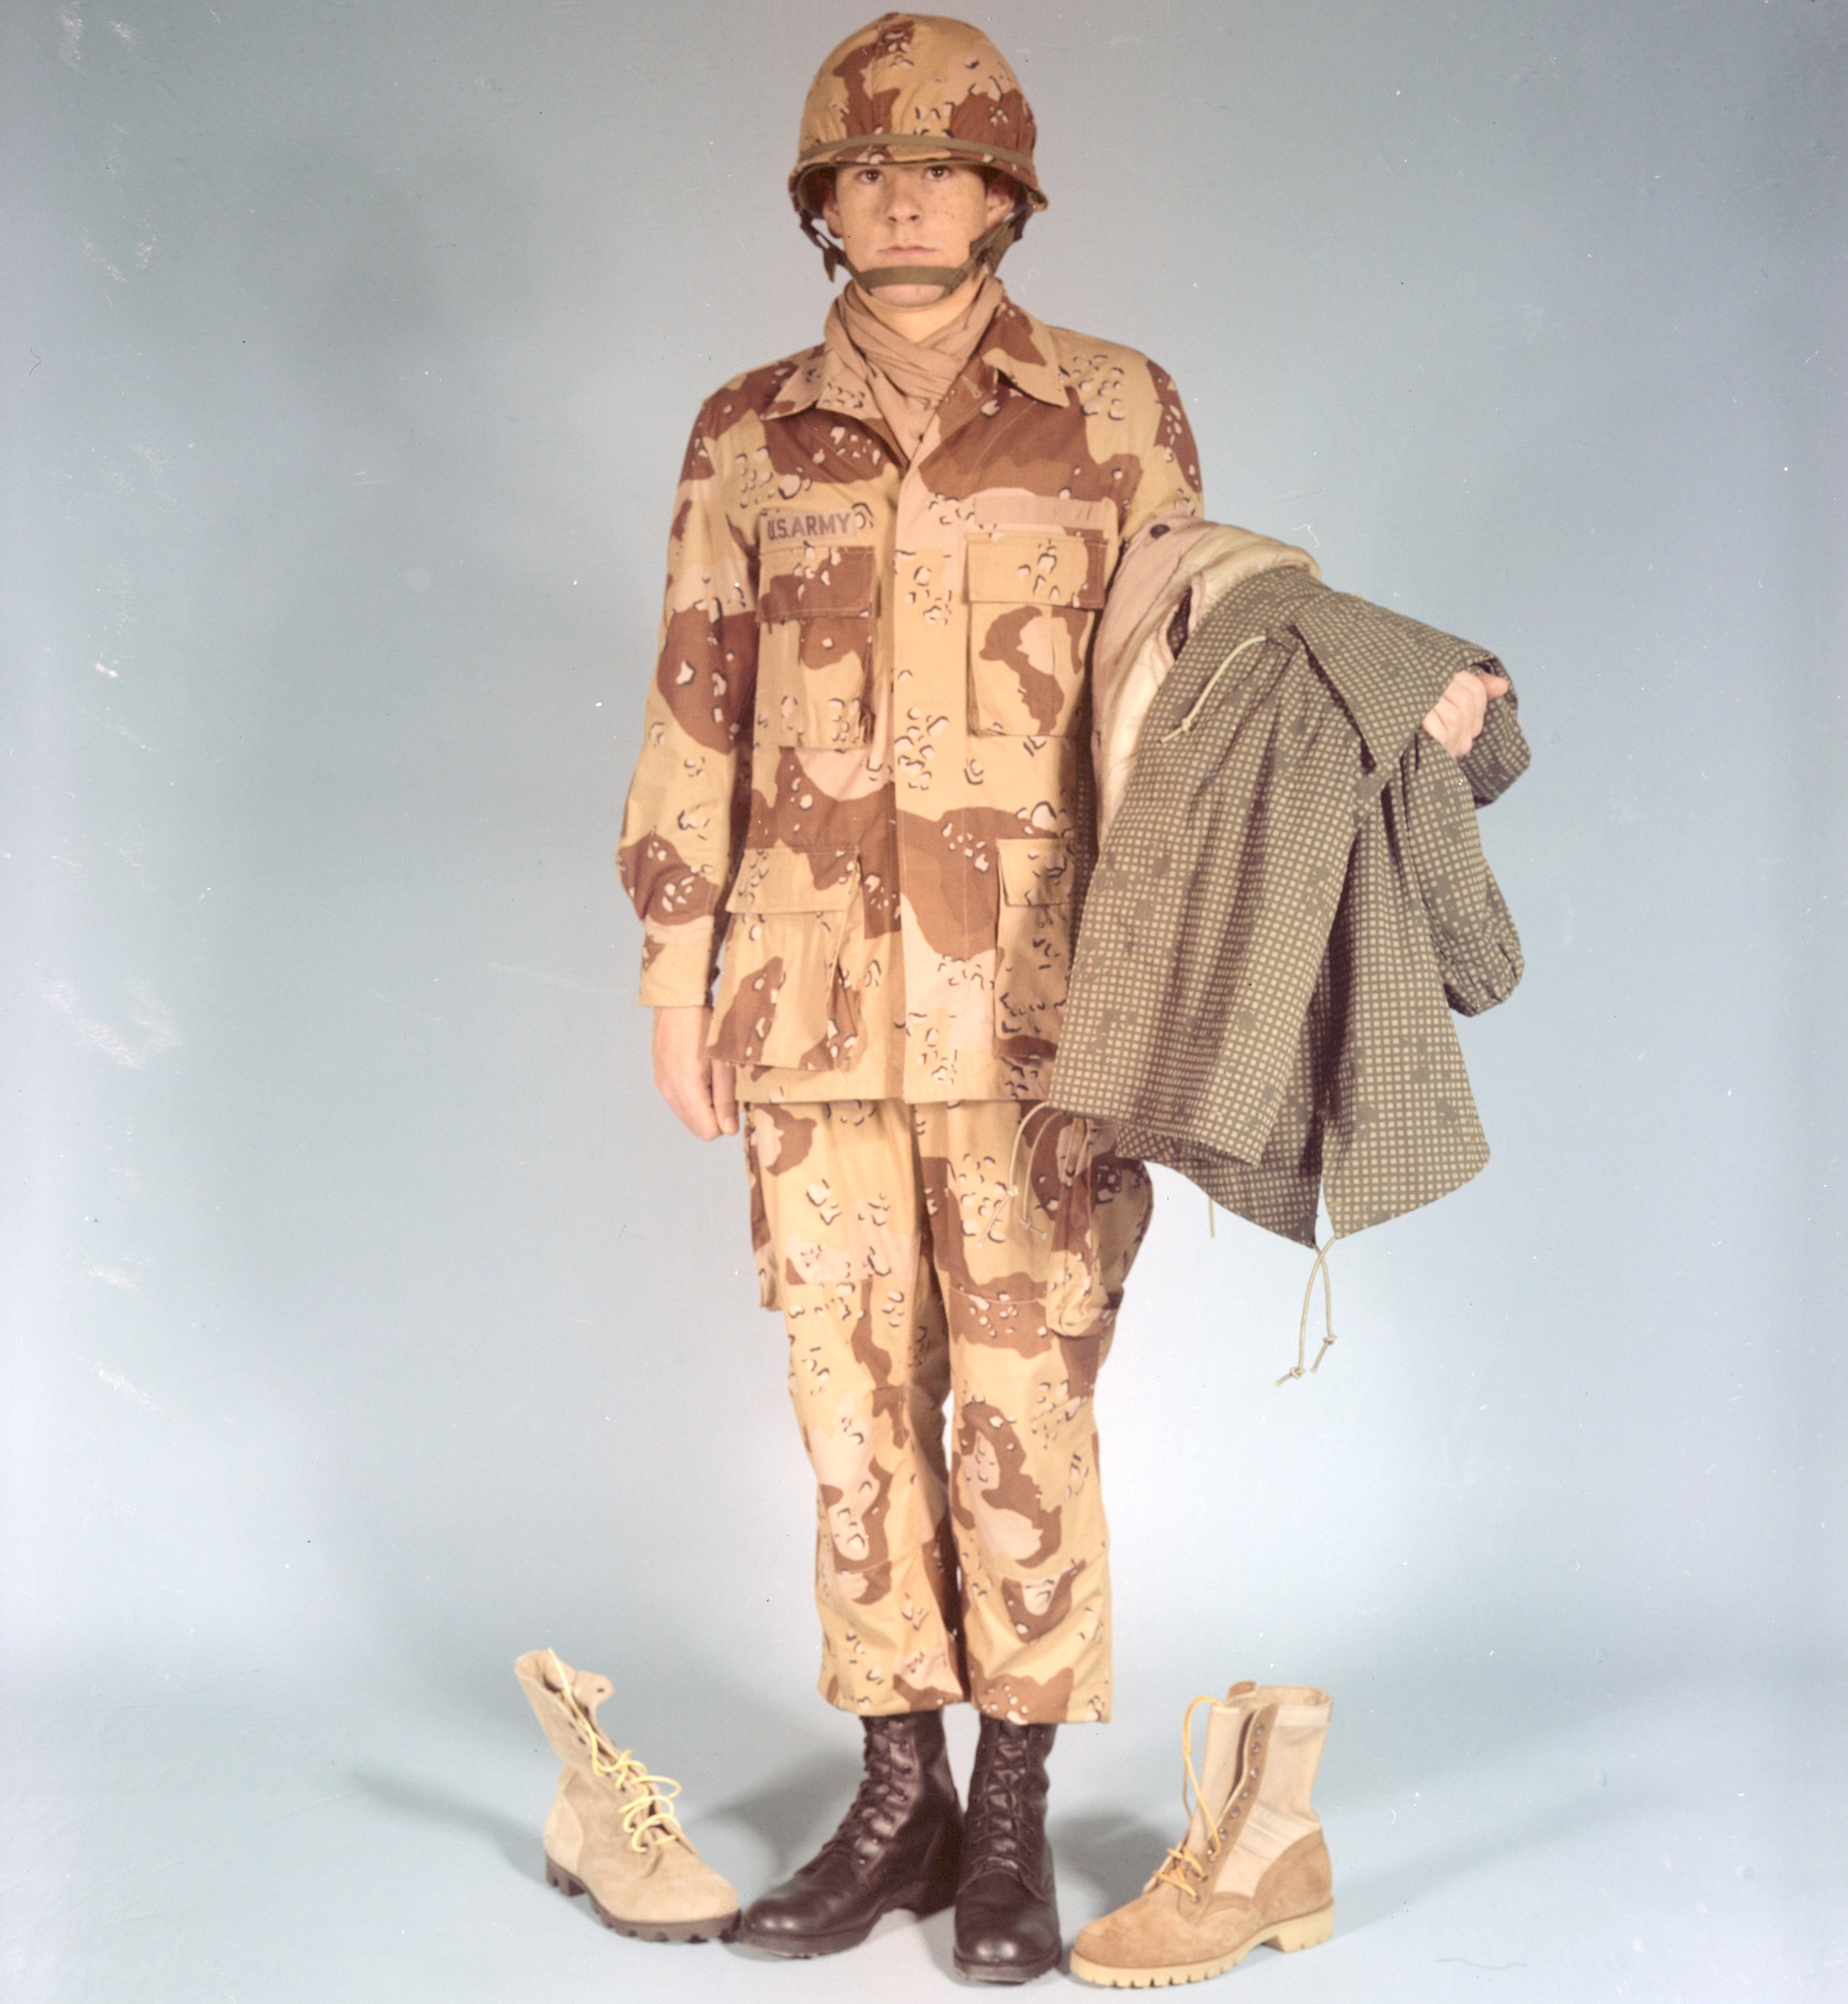 Desert Battle Dress Uniform - Wikipedia